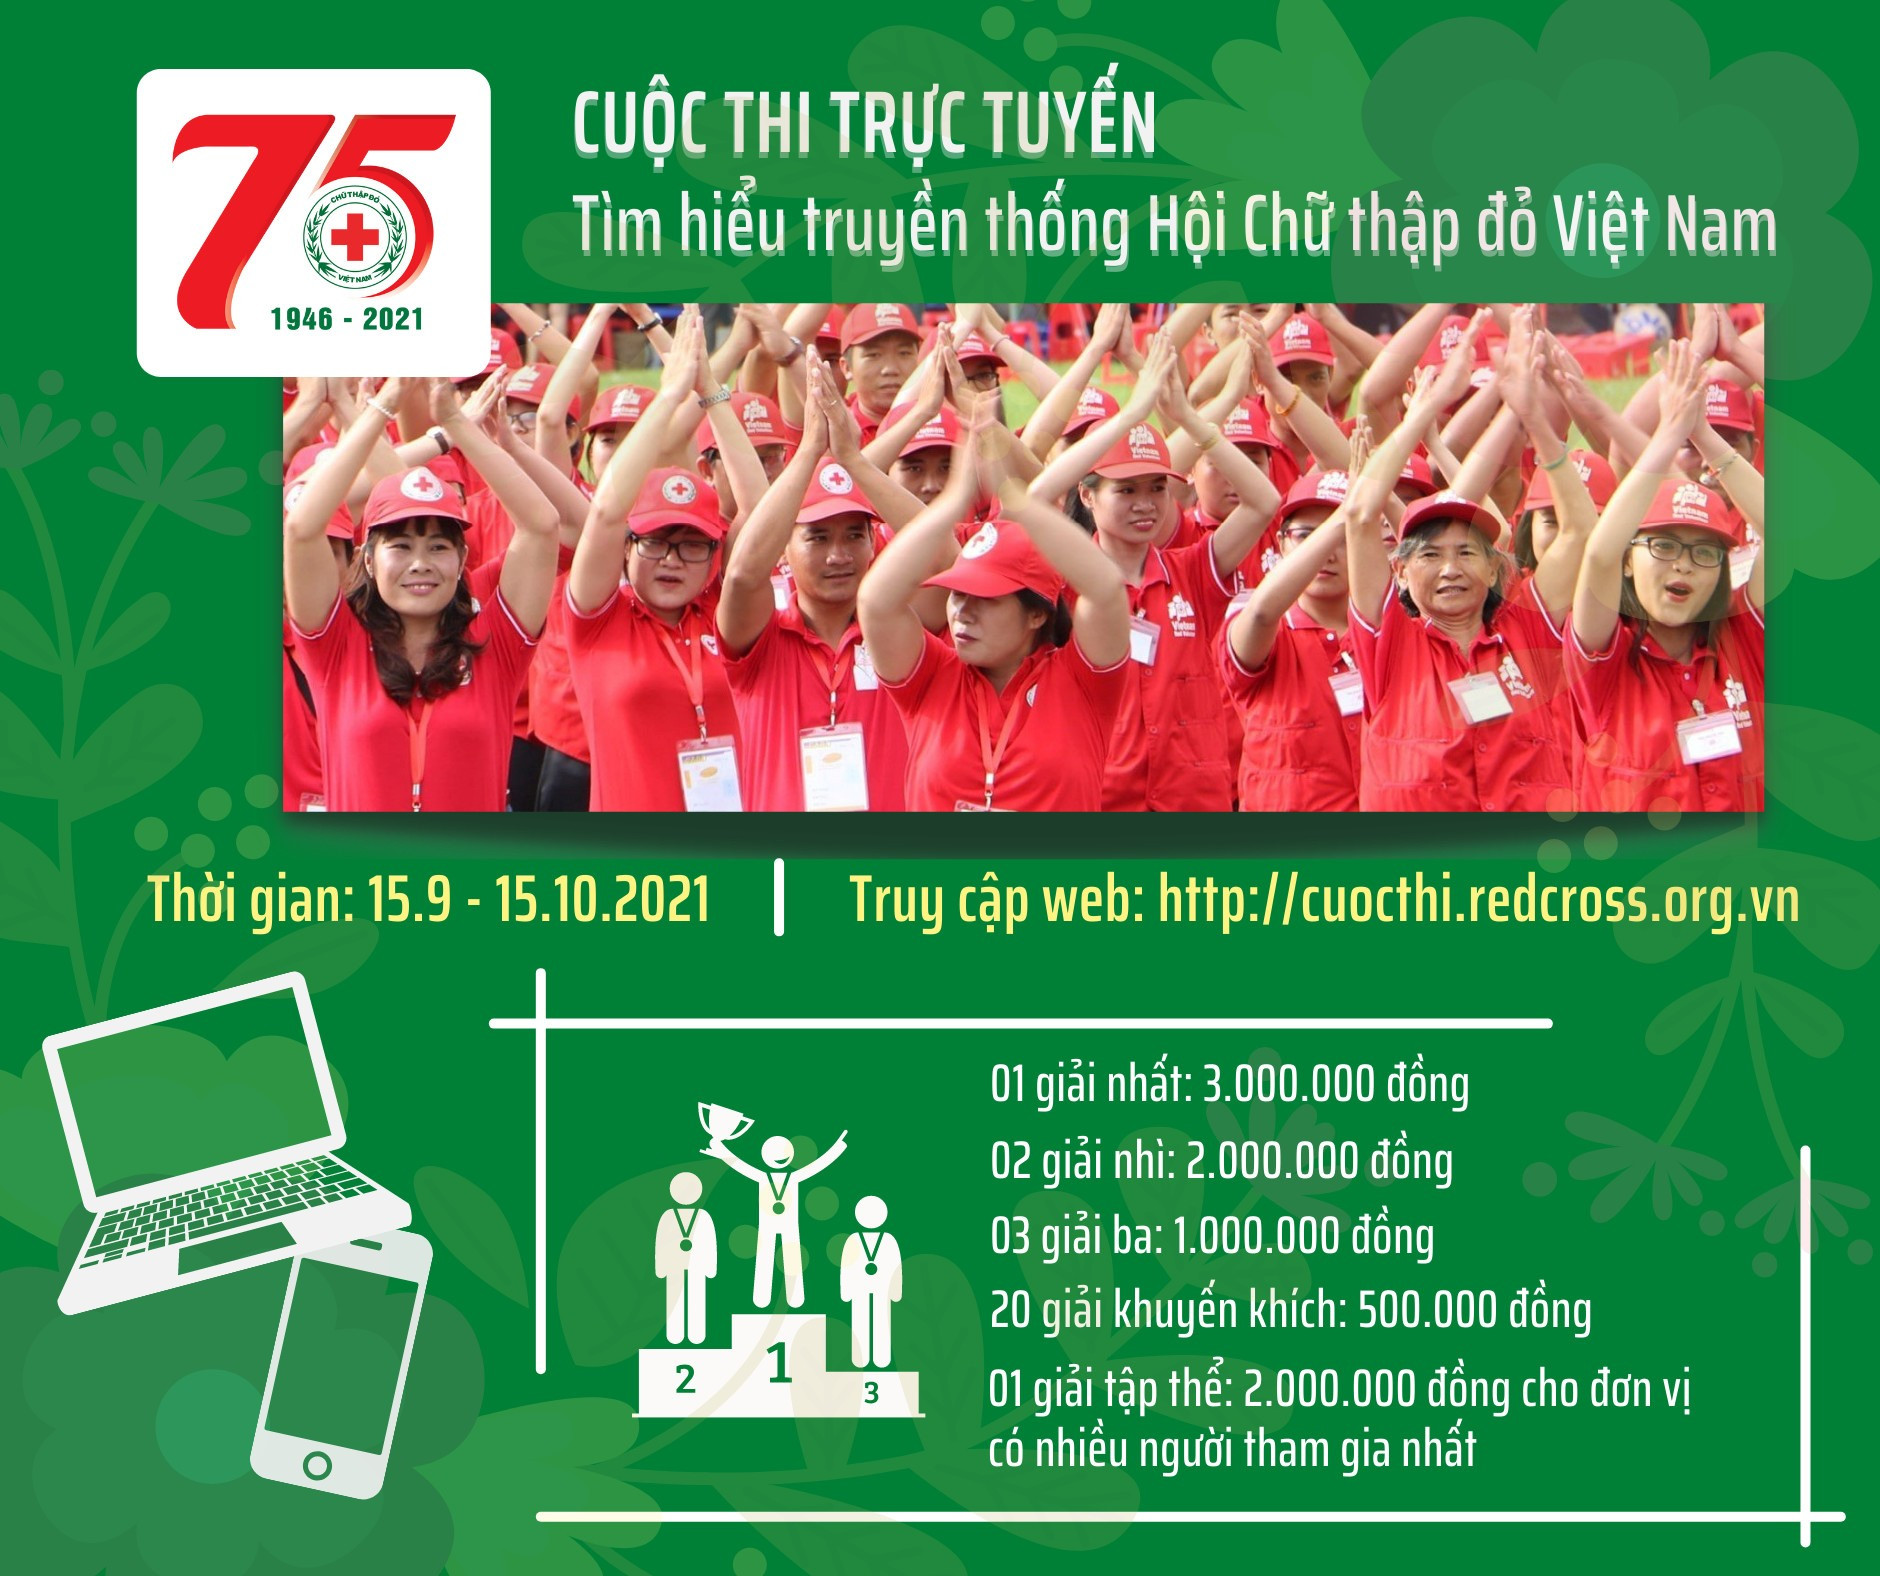 Hội Chữ thập đỏ Việt Nam tổ chức cuộc thi trực tuyến tìm hiểu về truyền thống của hội.